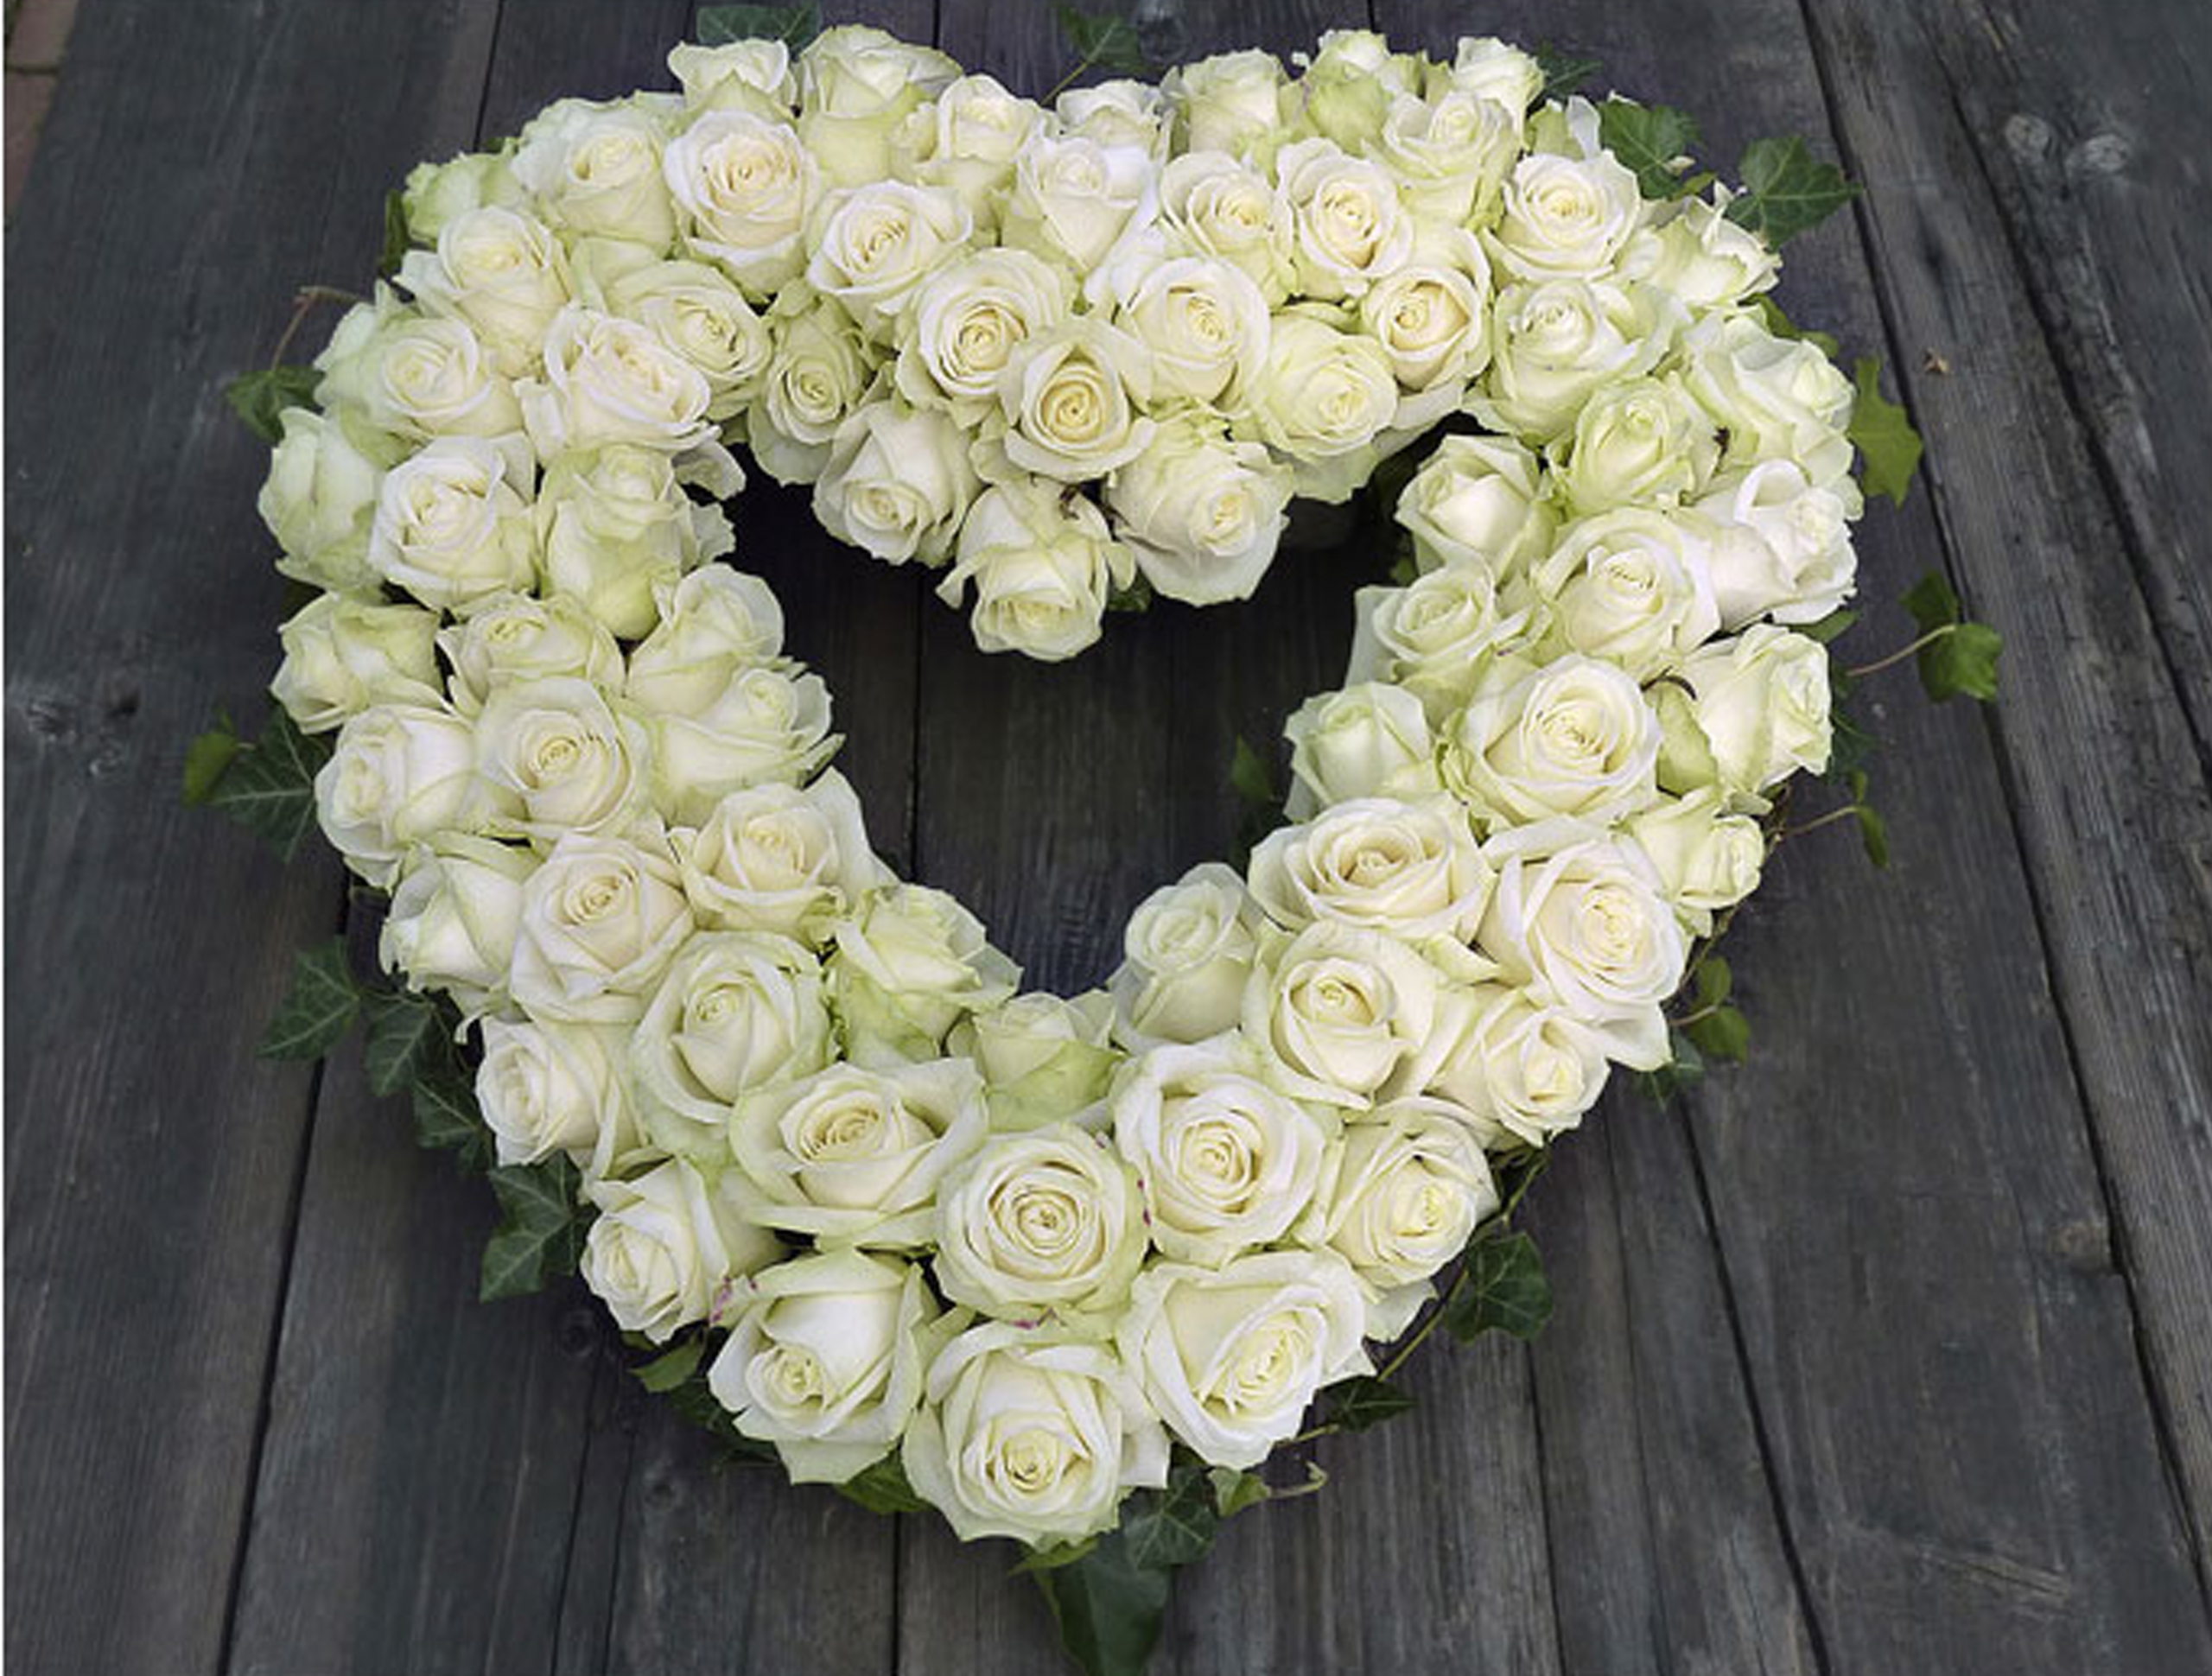 Open hart met witte rozen - Sjaardema